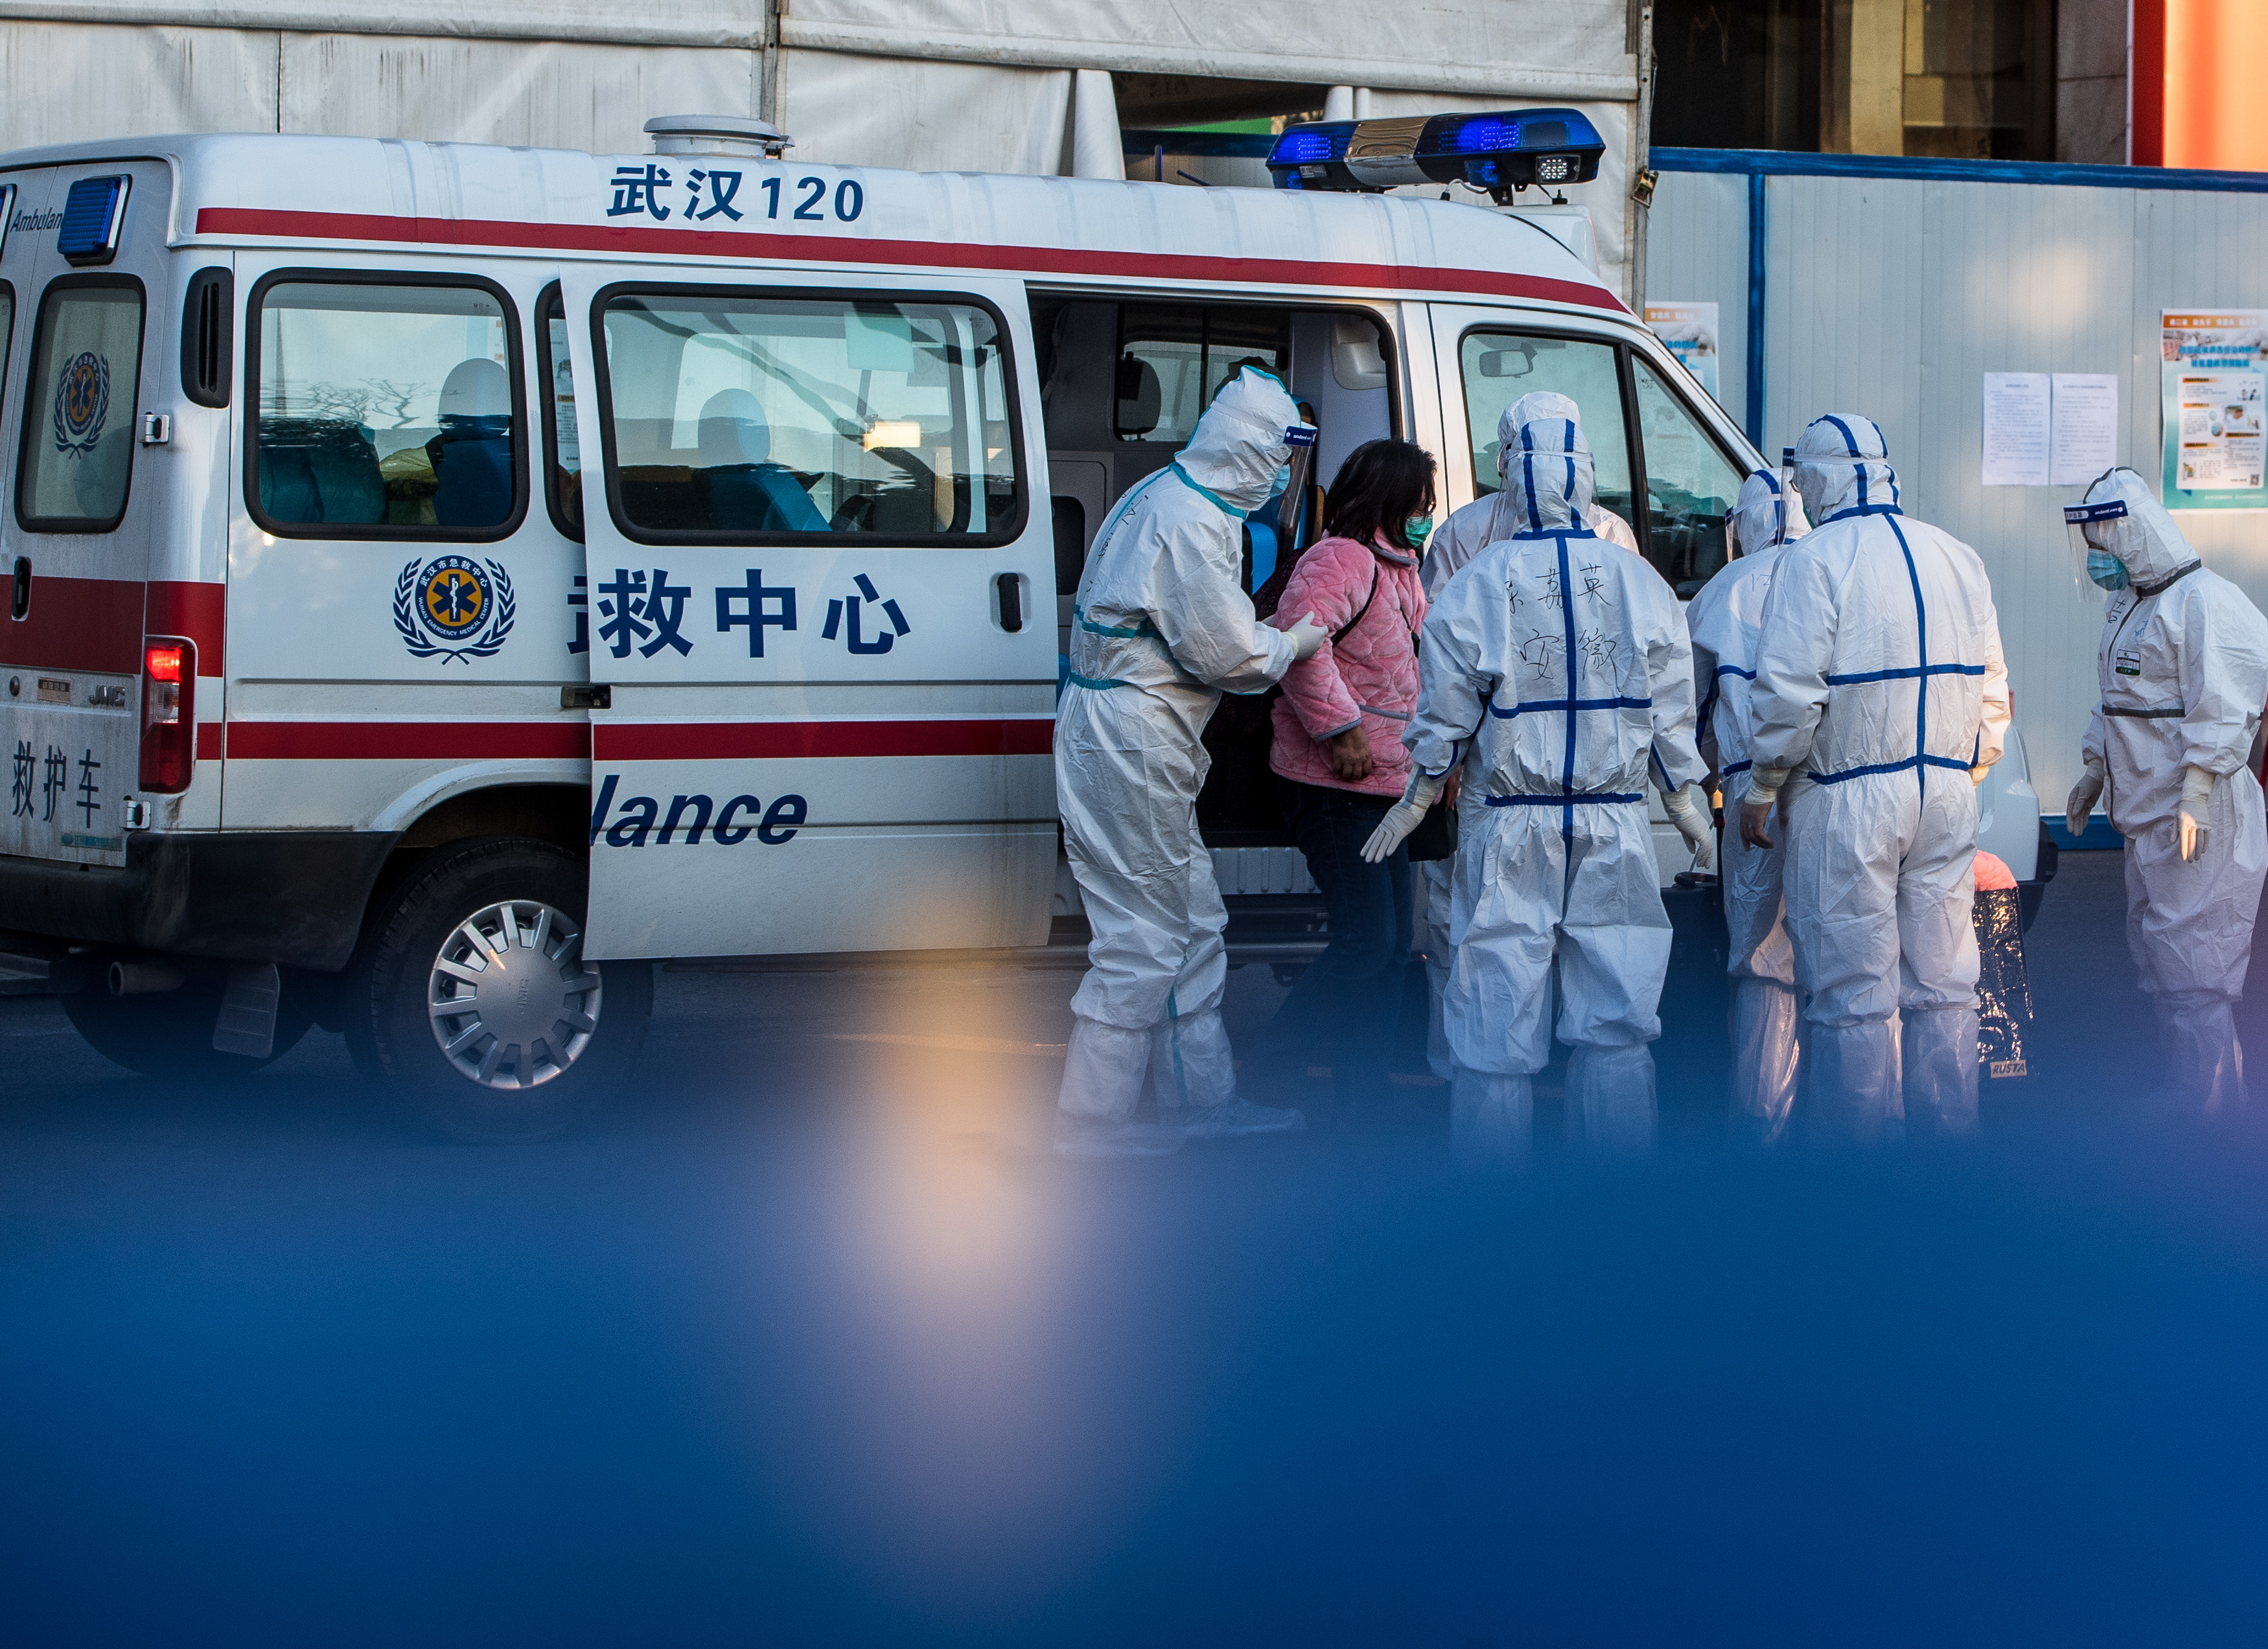 2月12日,医护人员将患者送入武汉体育中心方舱医院